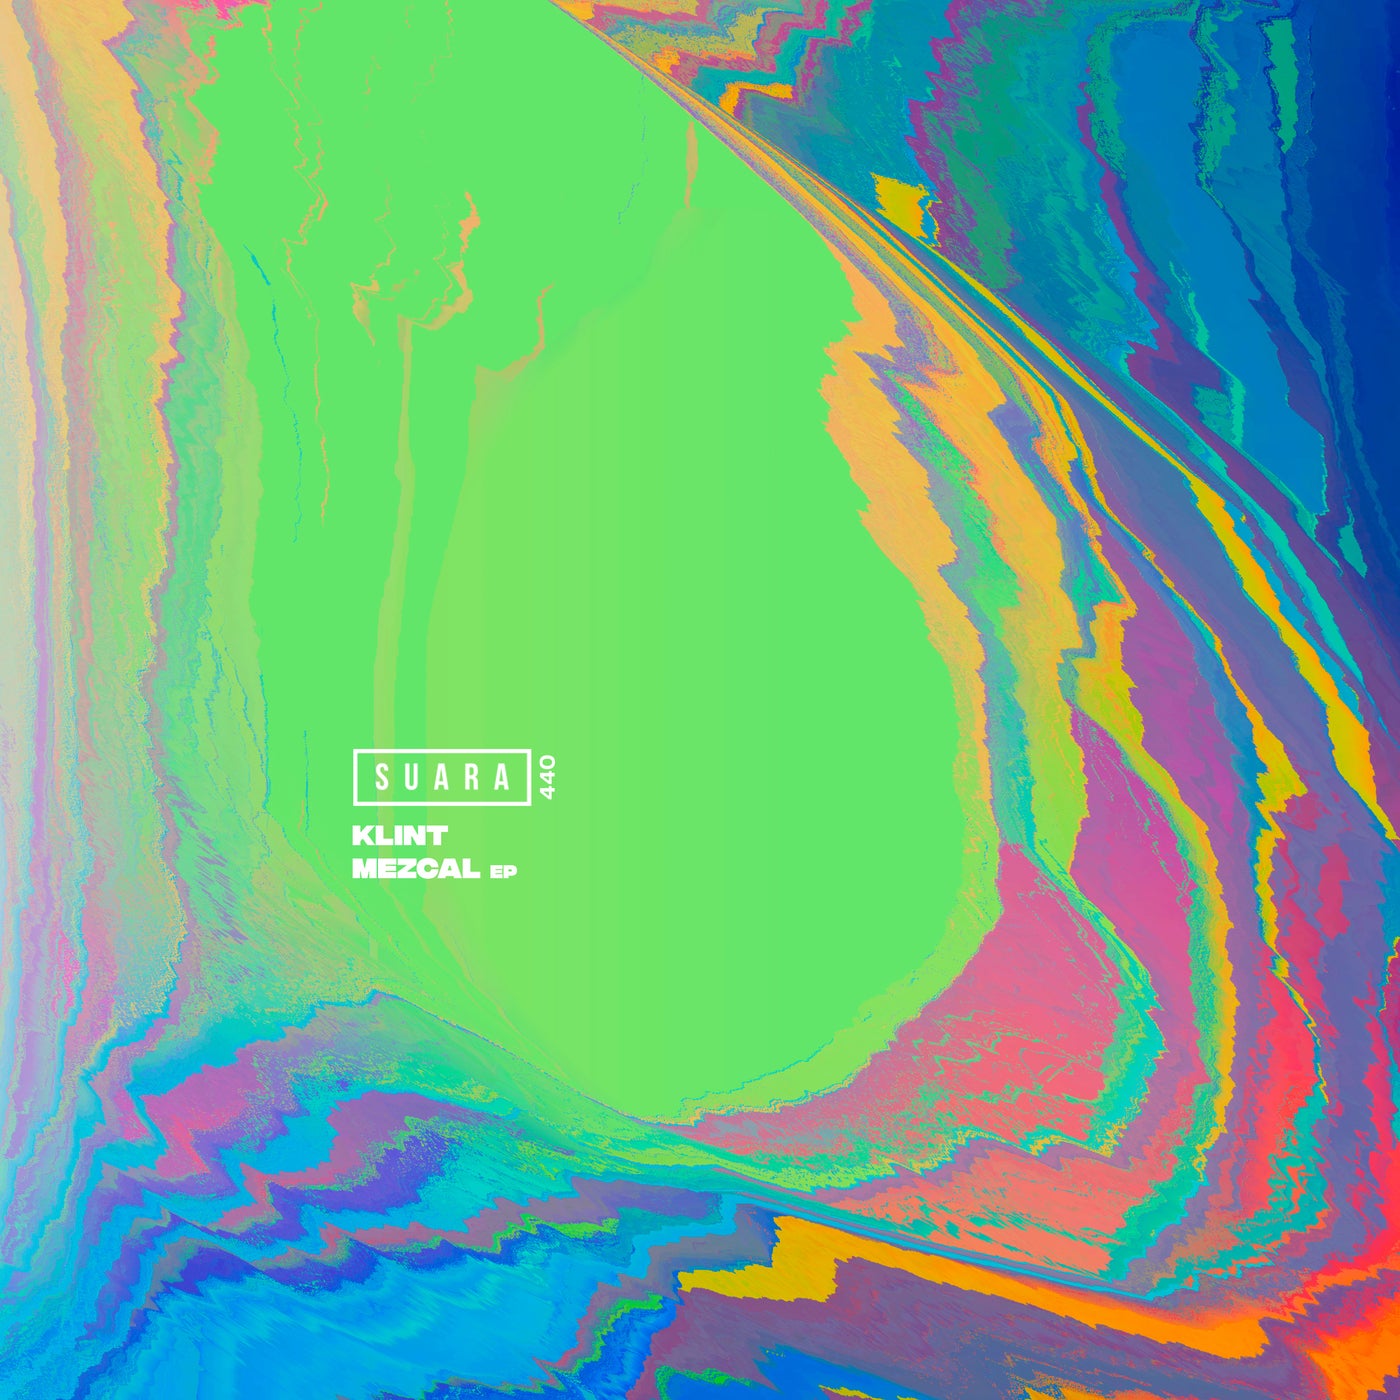 Klint – Mezcal EP [SUARA440]